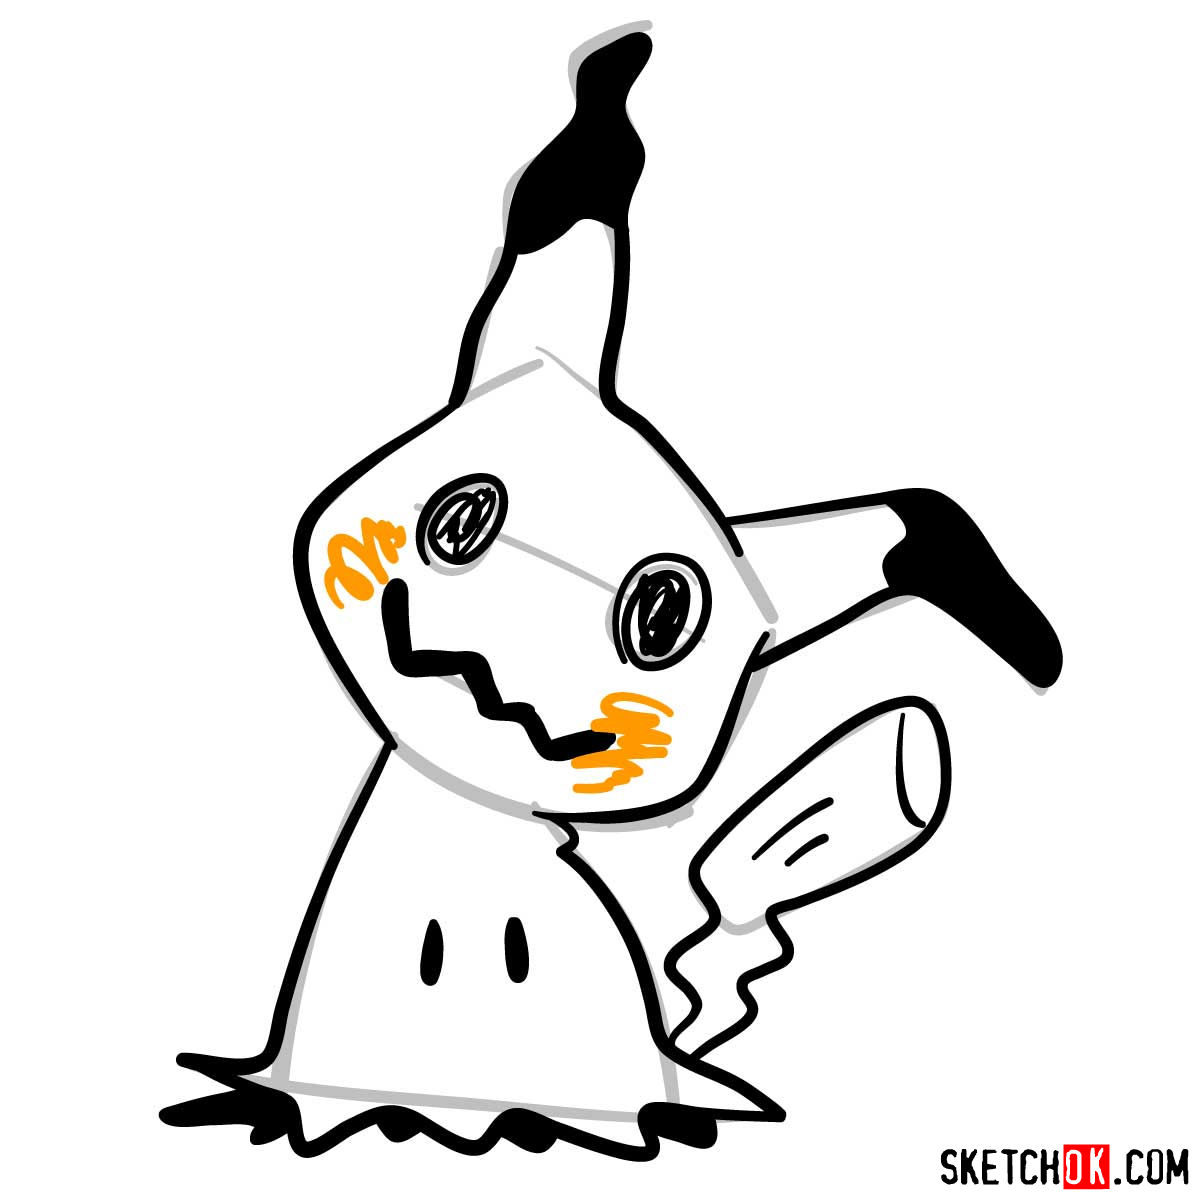 How to draw Mimikyu ghost pokemon (looks like Pikachu) - step 08